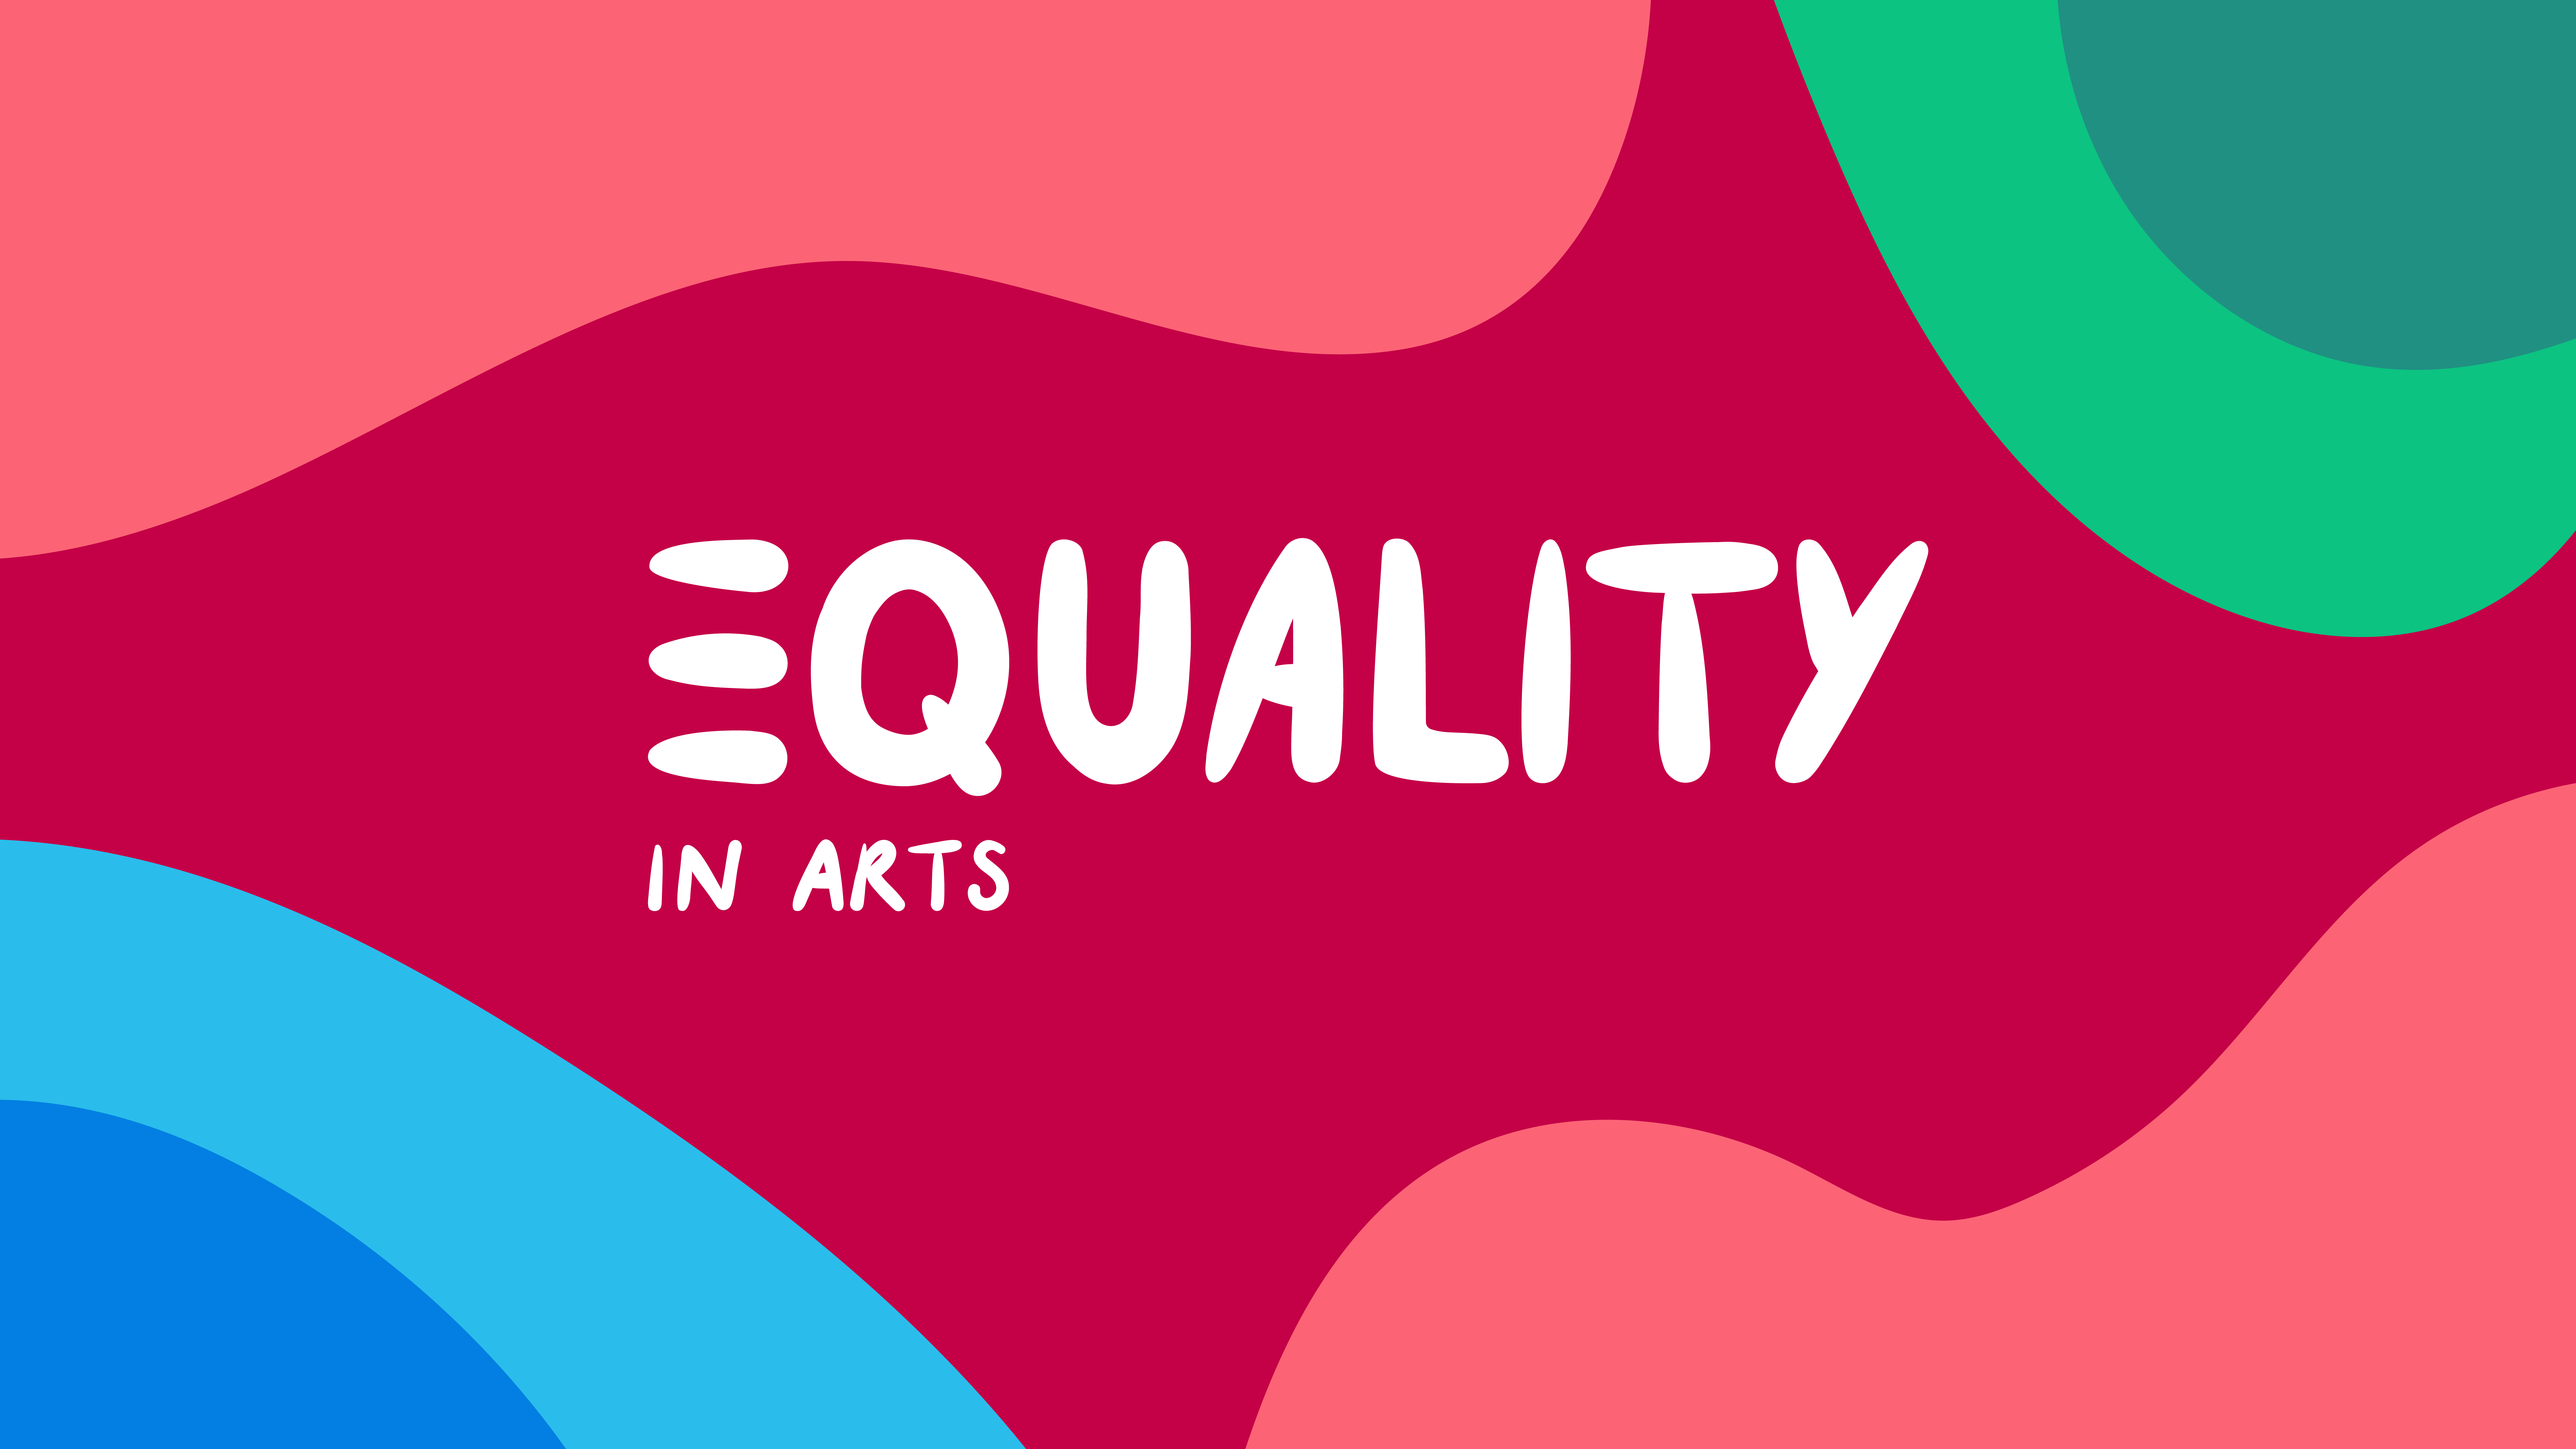 gekleurd logo met 'equality in arts' in het midden